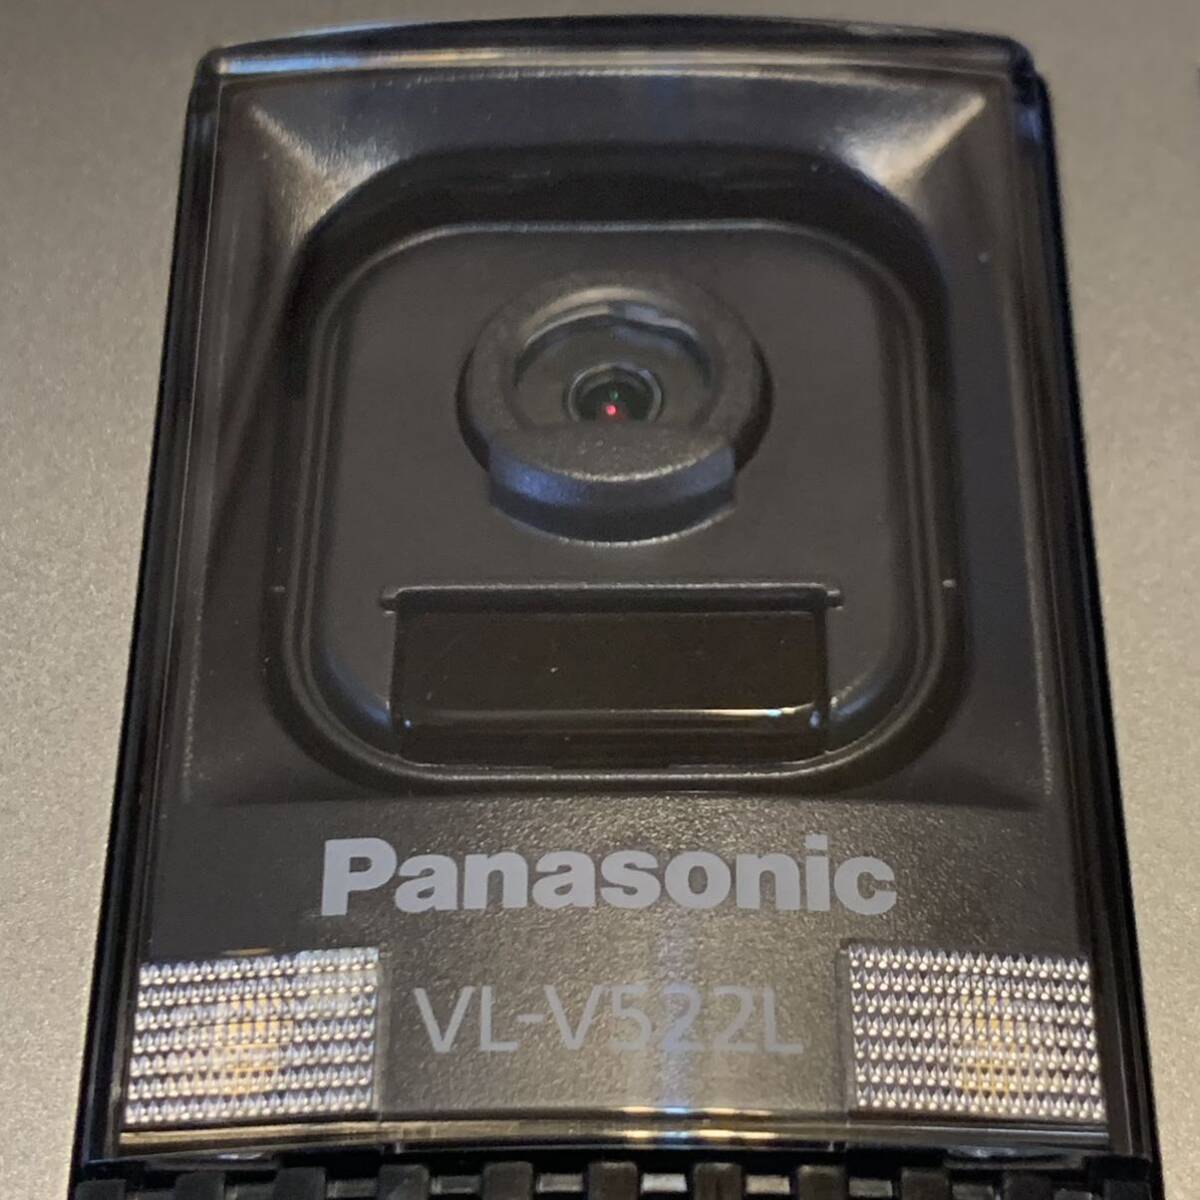 美品 VL-V522L-S パナソニック パナソニックドアホン 玄関子機 Panasonic インターホン カラーカメラ玄関子機の画像2